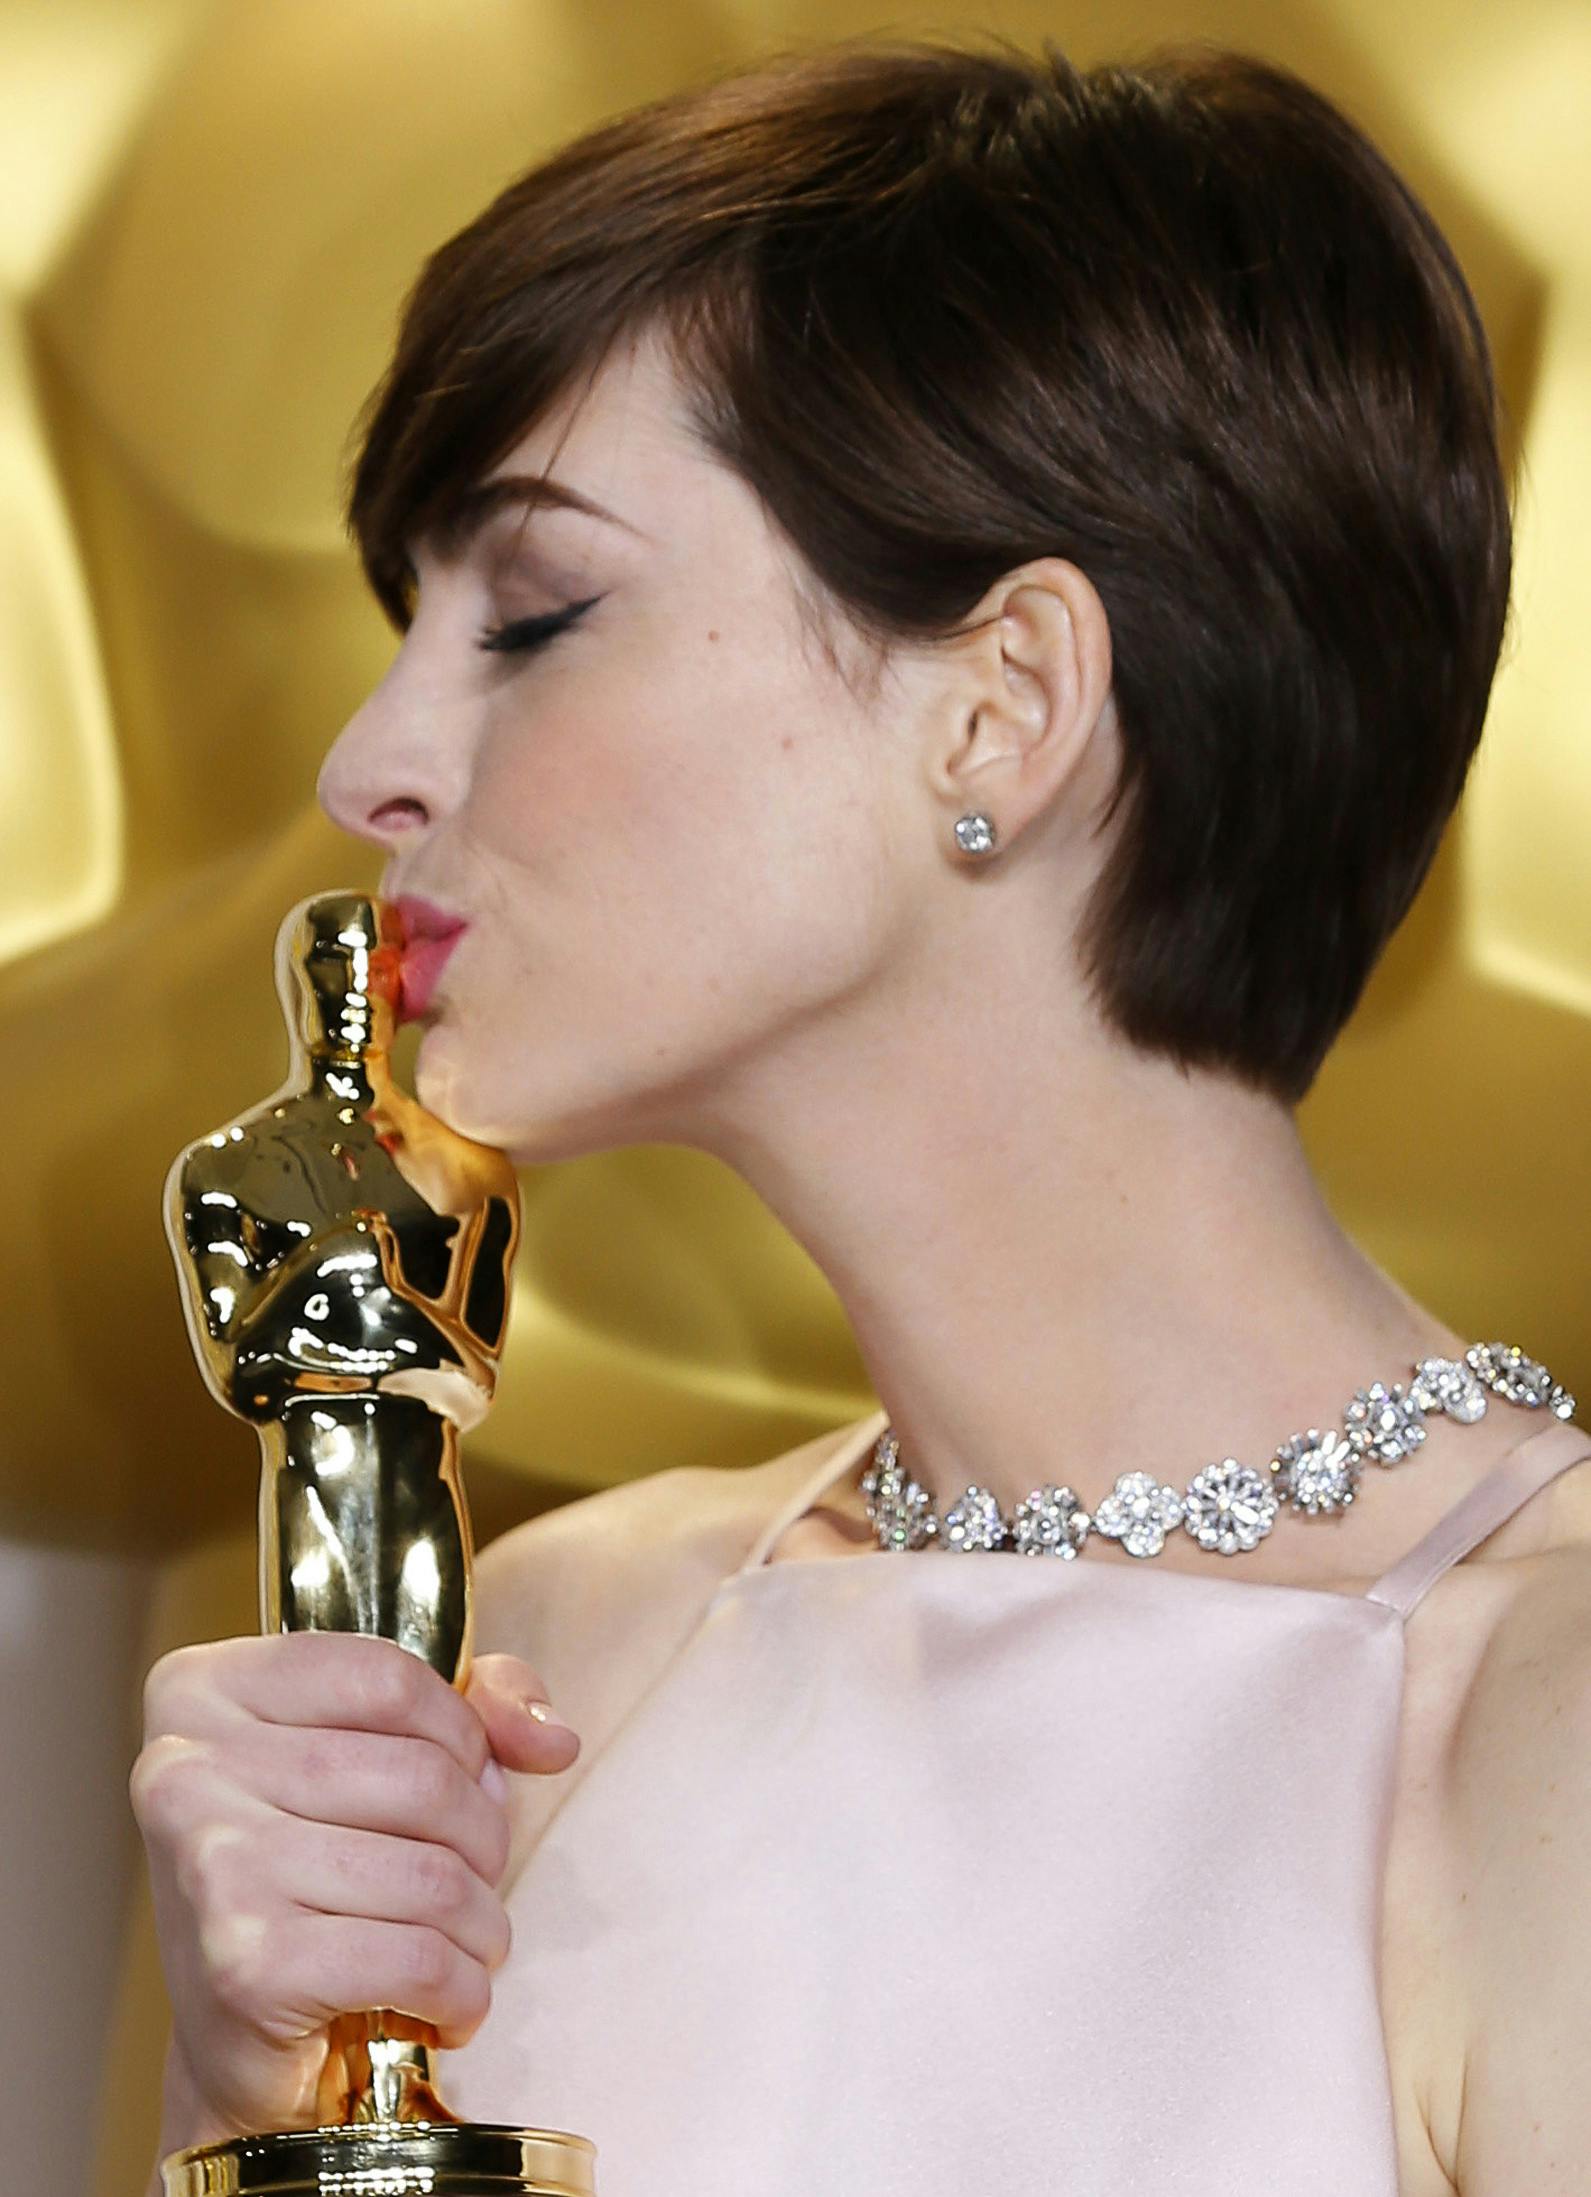 Anne Hathaway vandt i 2013 en Oscar for bedste birolle i "Les Misérables", og statuetten fik selvfølgelig kys.